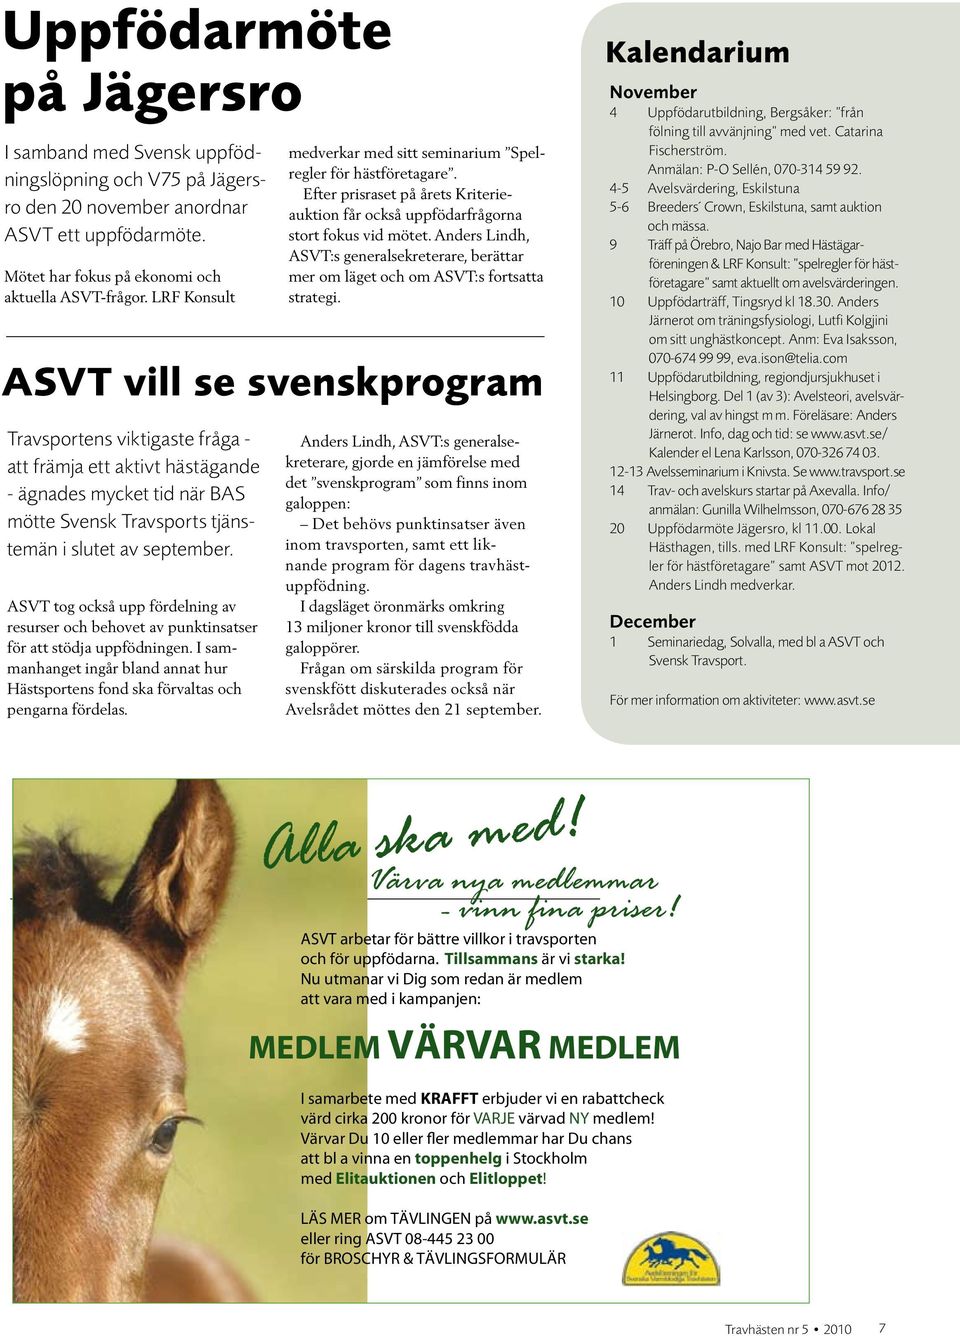 ASVT tog också upp fördelning av resurser och behovet av punkt insatser för att stödja uppfödningen. I sammanhanget ingår bland annat hur Hästsportens fond ska förvaltas och pengarna fördelas.